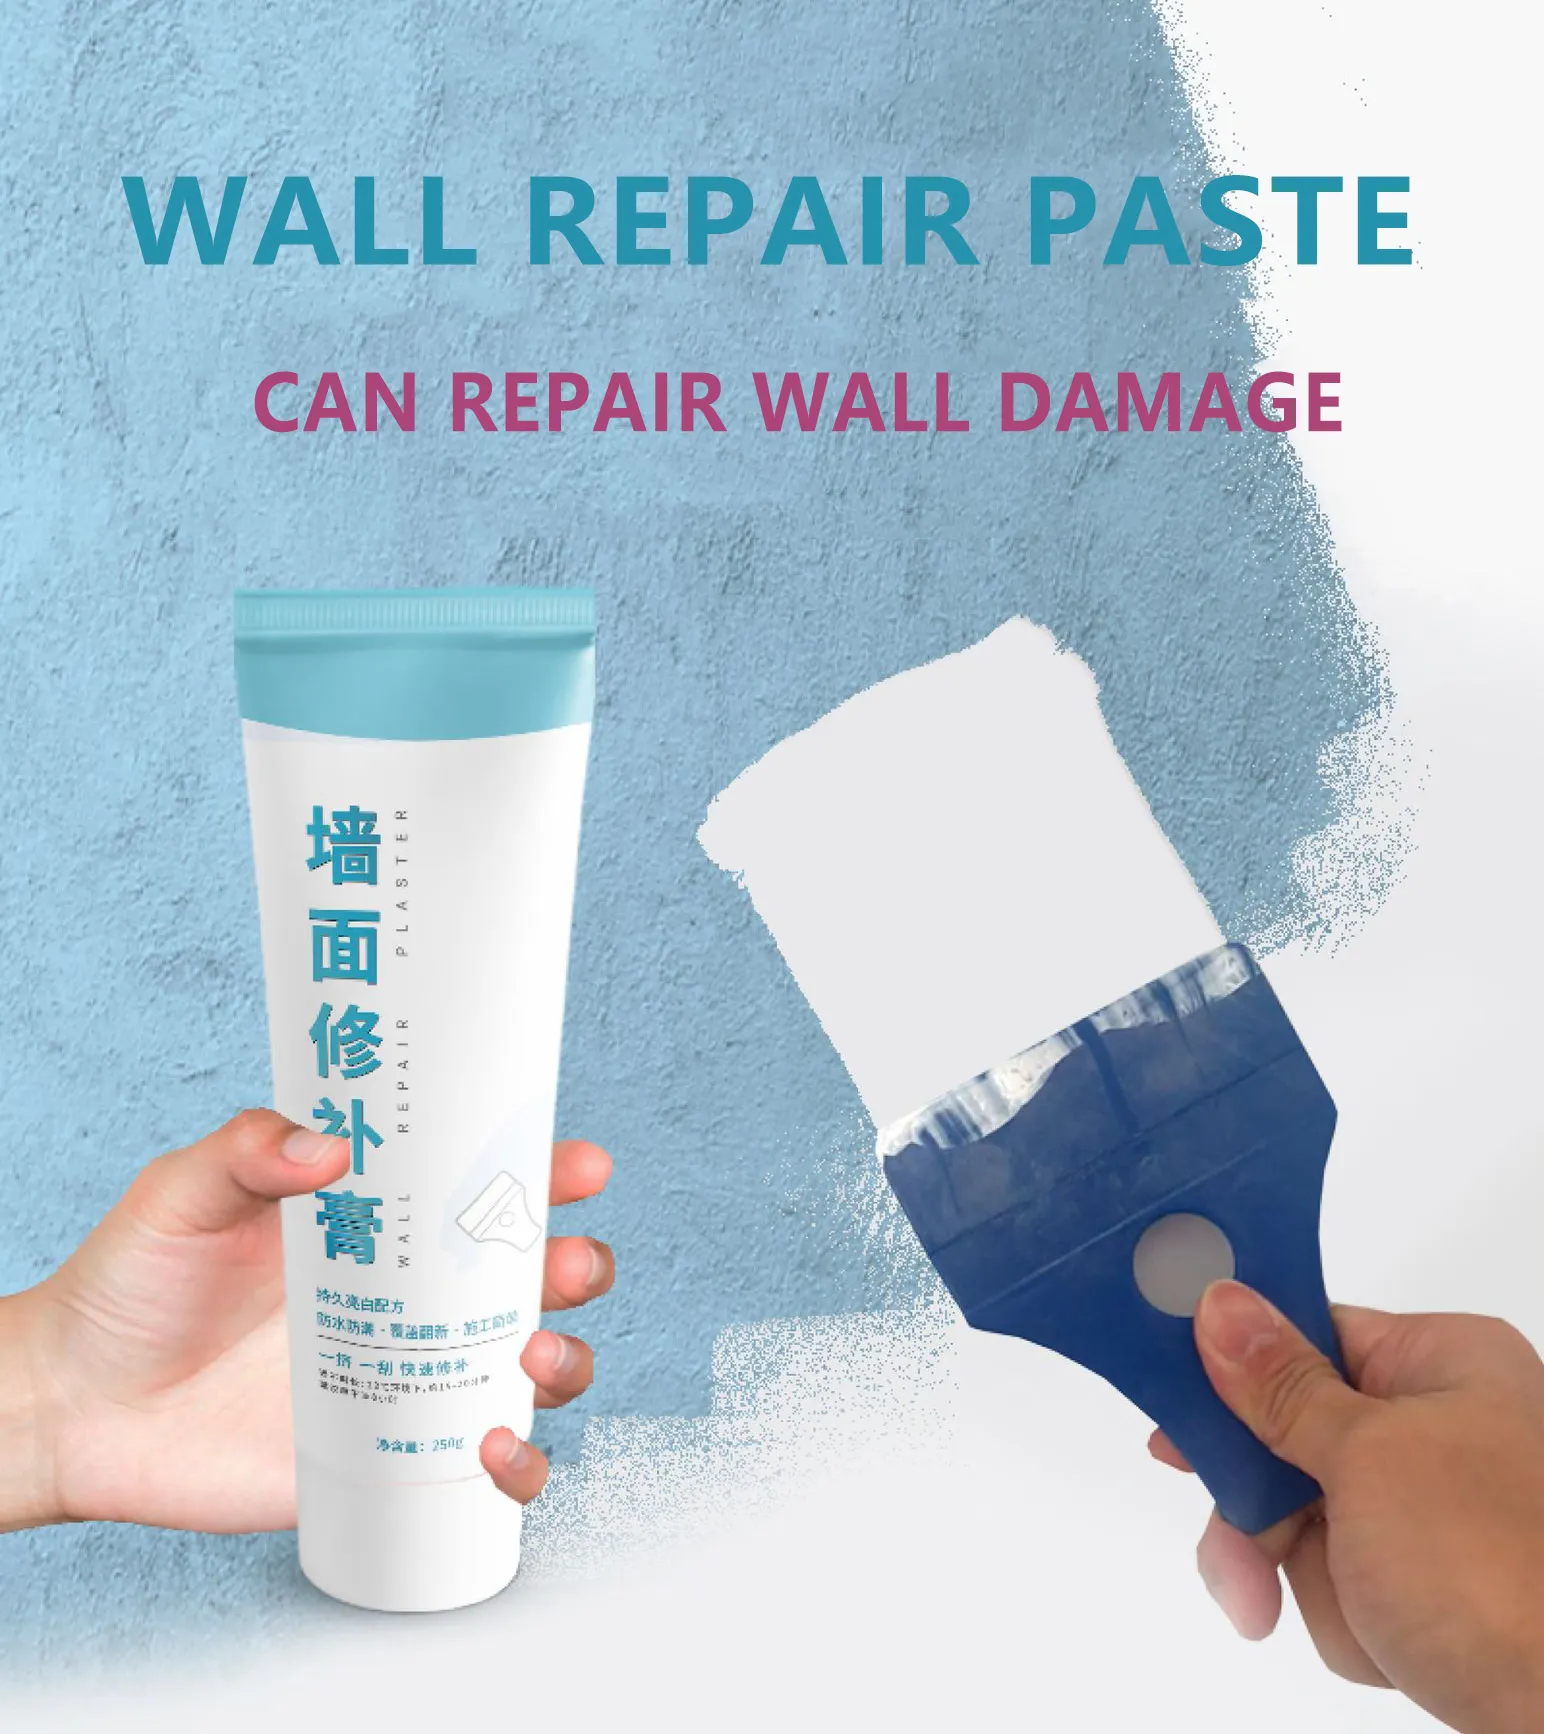 Drywall pasta de reparo do agente de reparação da parede branca, solução rápida e fácil de preencher os furos na superfície da parede